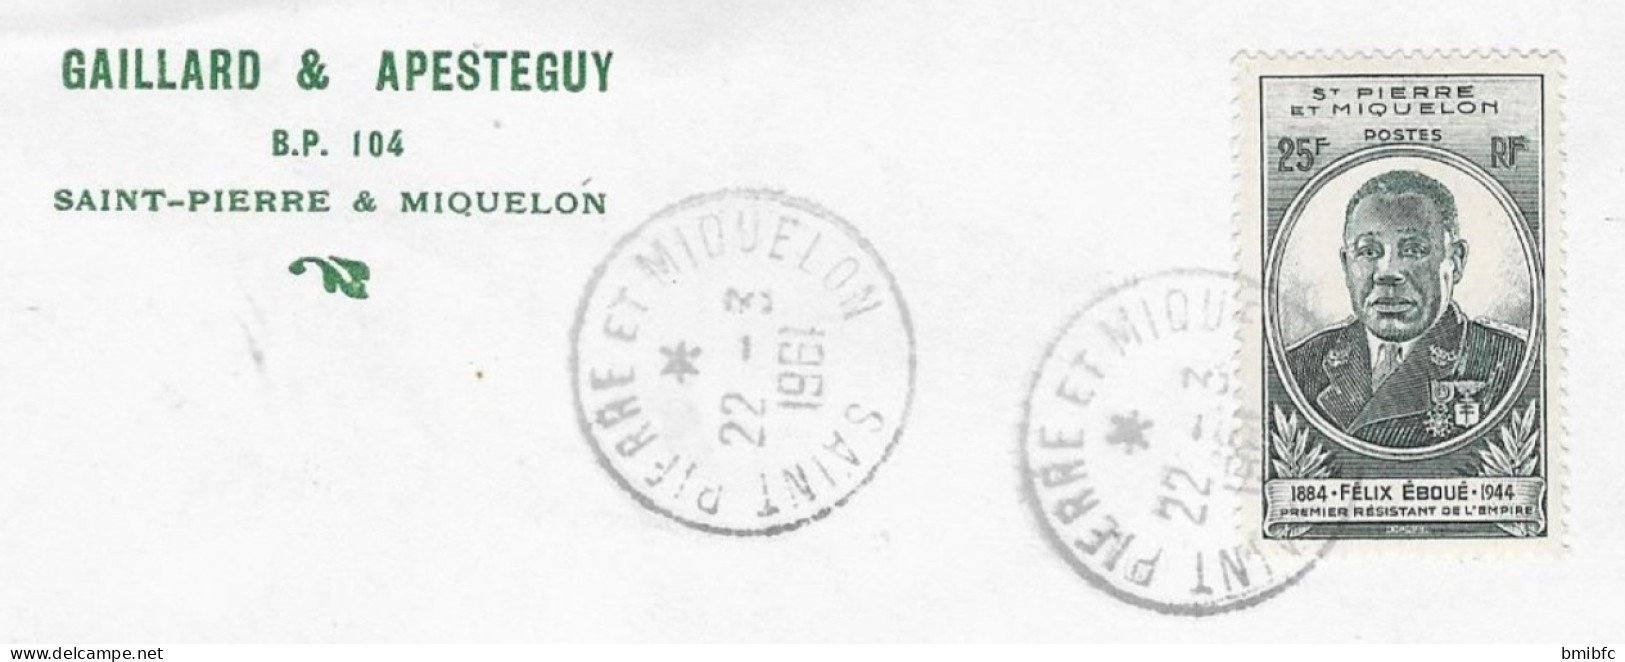 1961 Sur Lettre - GAILLARD&APESTEGUY BP 104 SAINT-PIERRE & MIQUELON - Covers & Documents